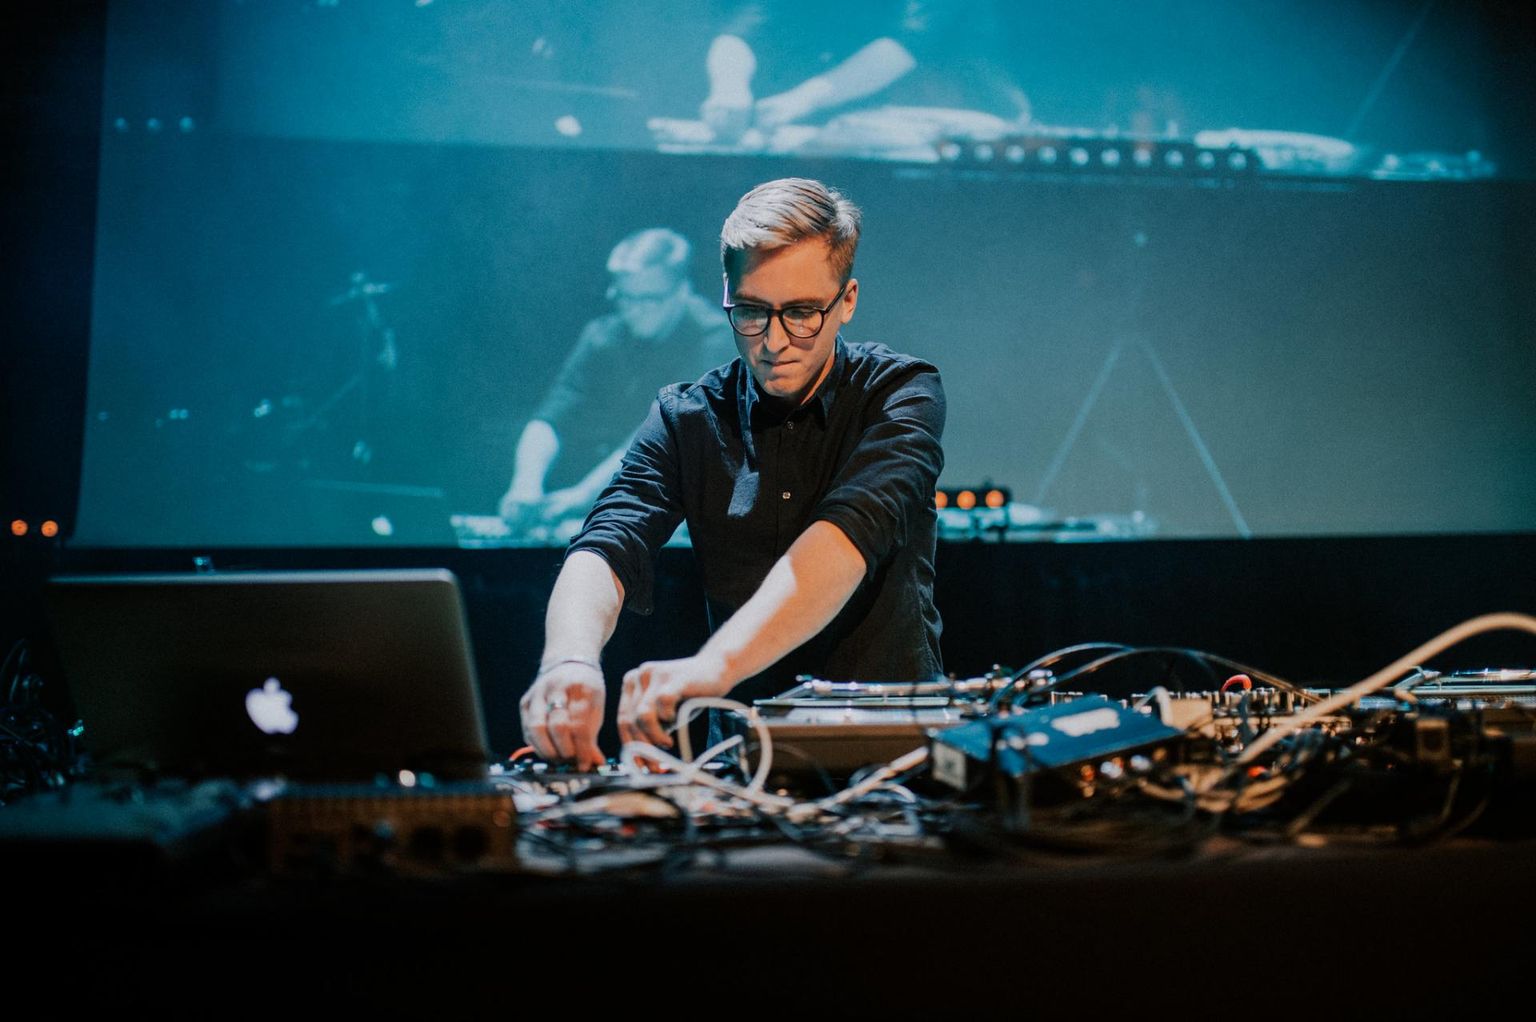 Saaremaalt pärit Sander Mölder alustas muusikuteed, õppides seitse aastat tšellot. Kuigi nüüdseks tuntakse teda eelkõige DJ-na, ei ole klassikaline muusika tema elust kuhugi kadunud.